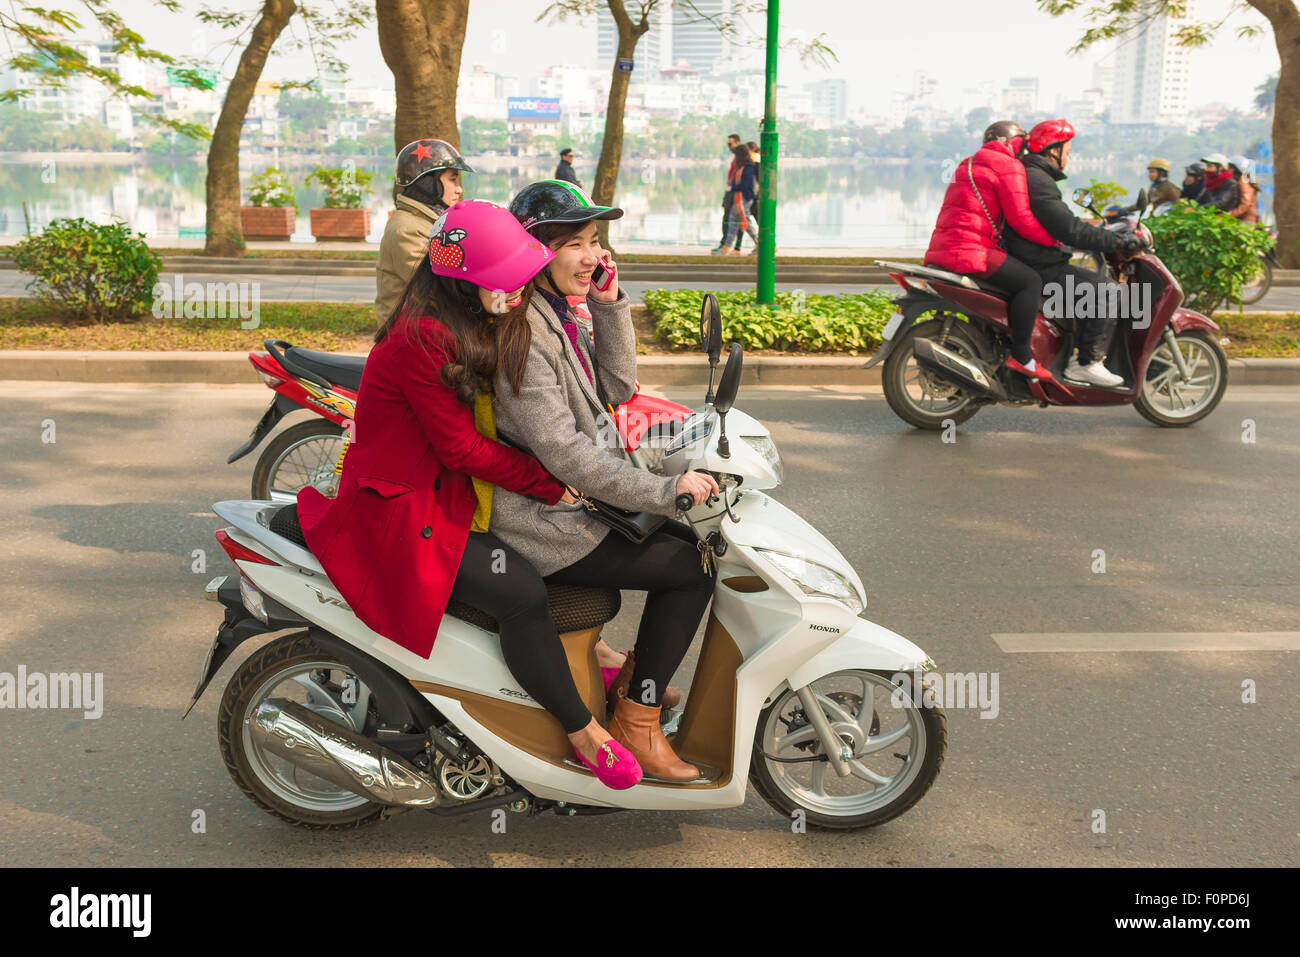 Freundschaft mit Freundinnen, Ansicht von zwei jungen Frauen, die gemeinsam auf dem West Lake Causeway in Hanoi fahren Stockfoto